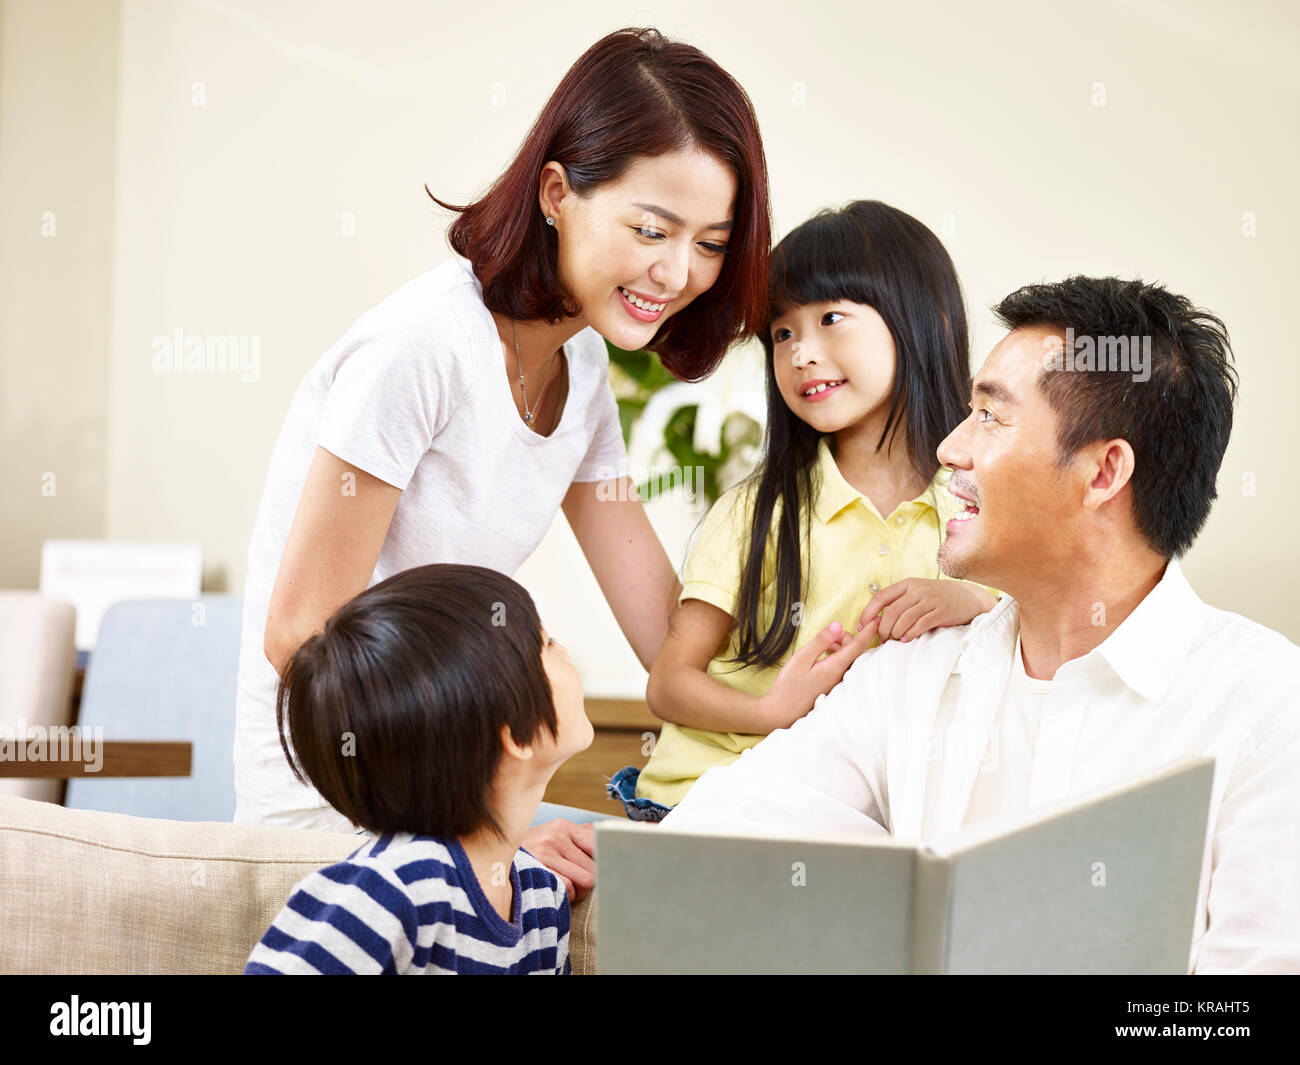 Les parents asiatiques mère et père et deux enfants fils et fille de la lecture d'un livre qui raconte une histoire ensemble. Banque D'Images